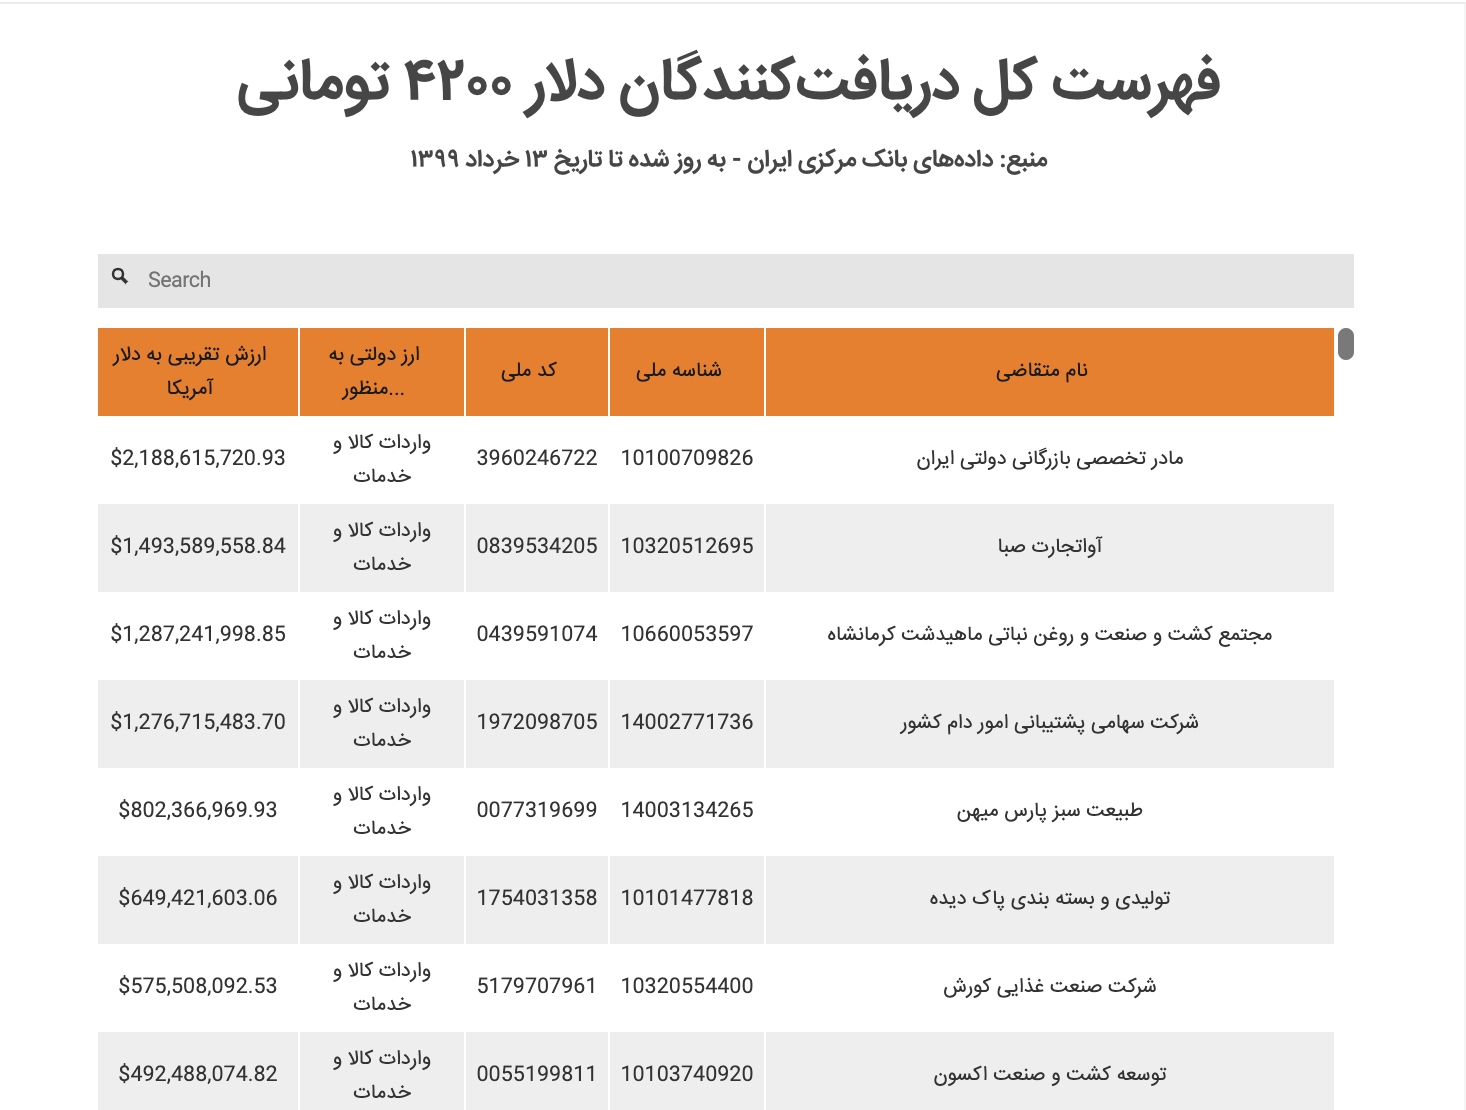 دریافت کنندگان ارزهای دولتی ایران به روایت آمار بانک مرکزی